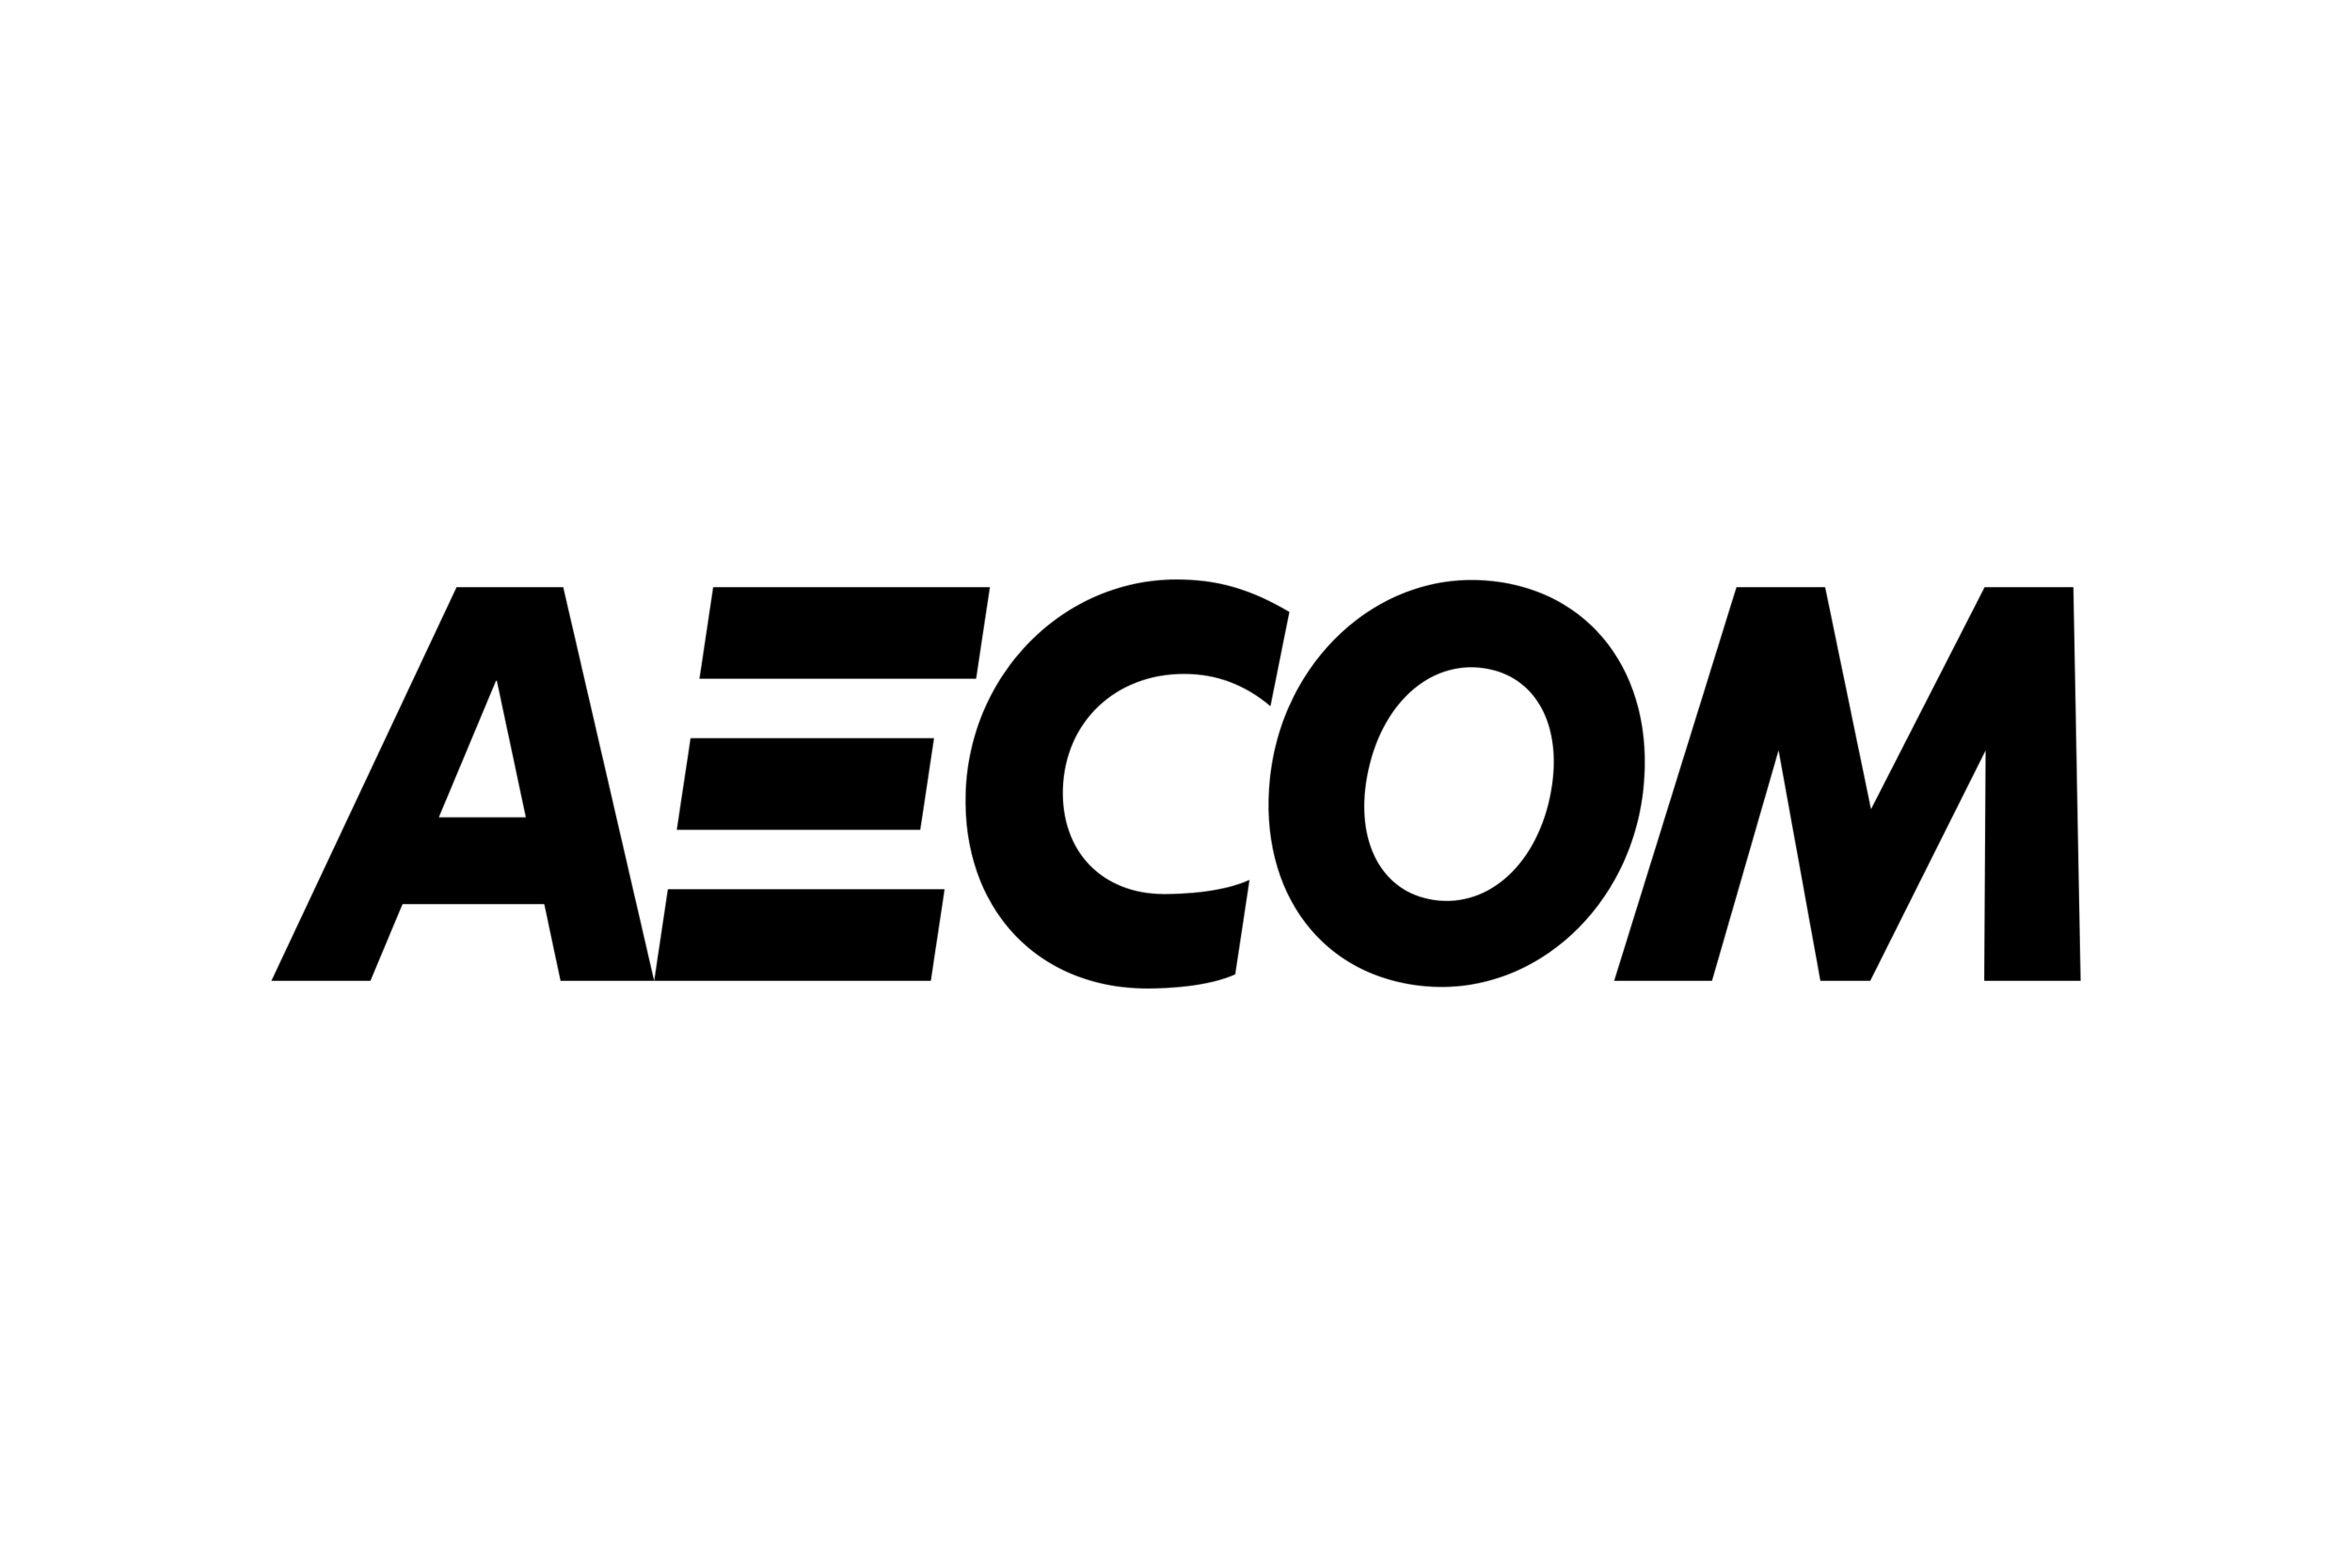 AECOM-Logo.wine.png